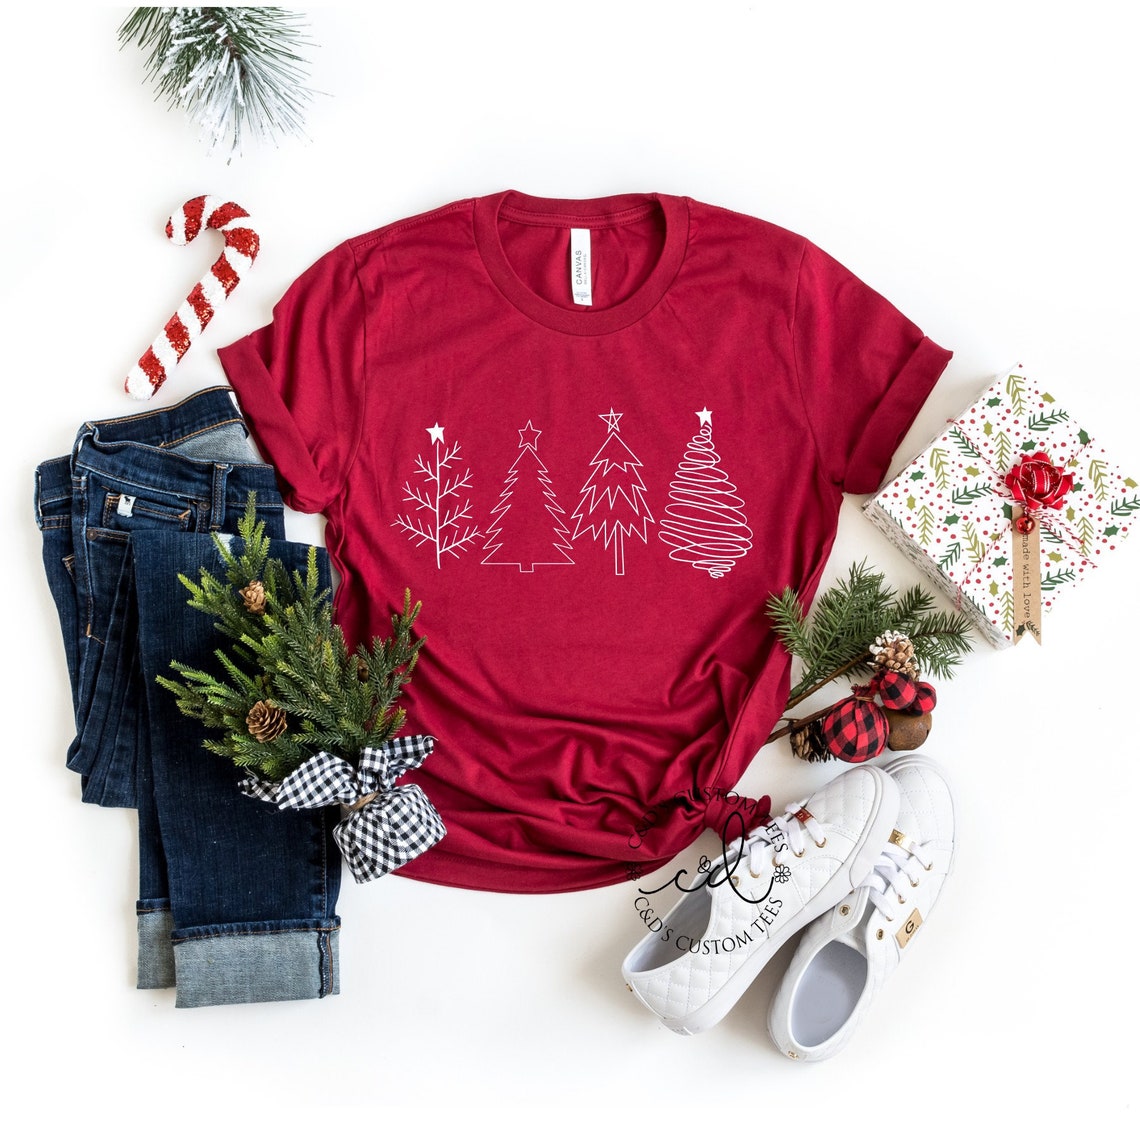 Christmas Tees - Merry Christmas Shirt - Christmas Tree Shirt - Christmas Party Shirts - Women's Christmas Tees - Holiday Tees - Winter Tees